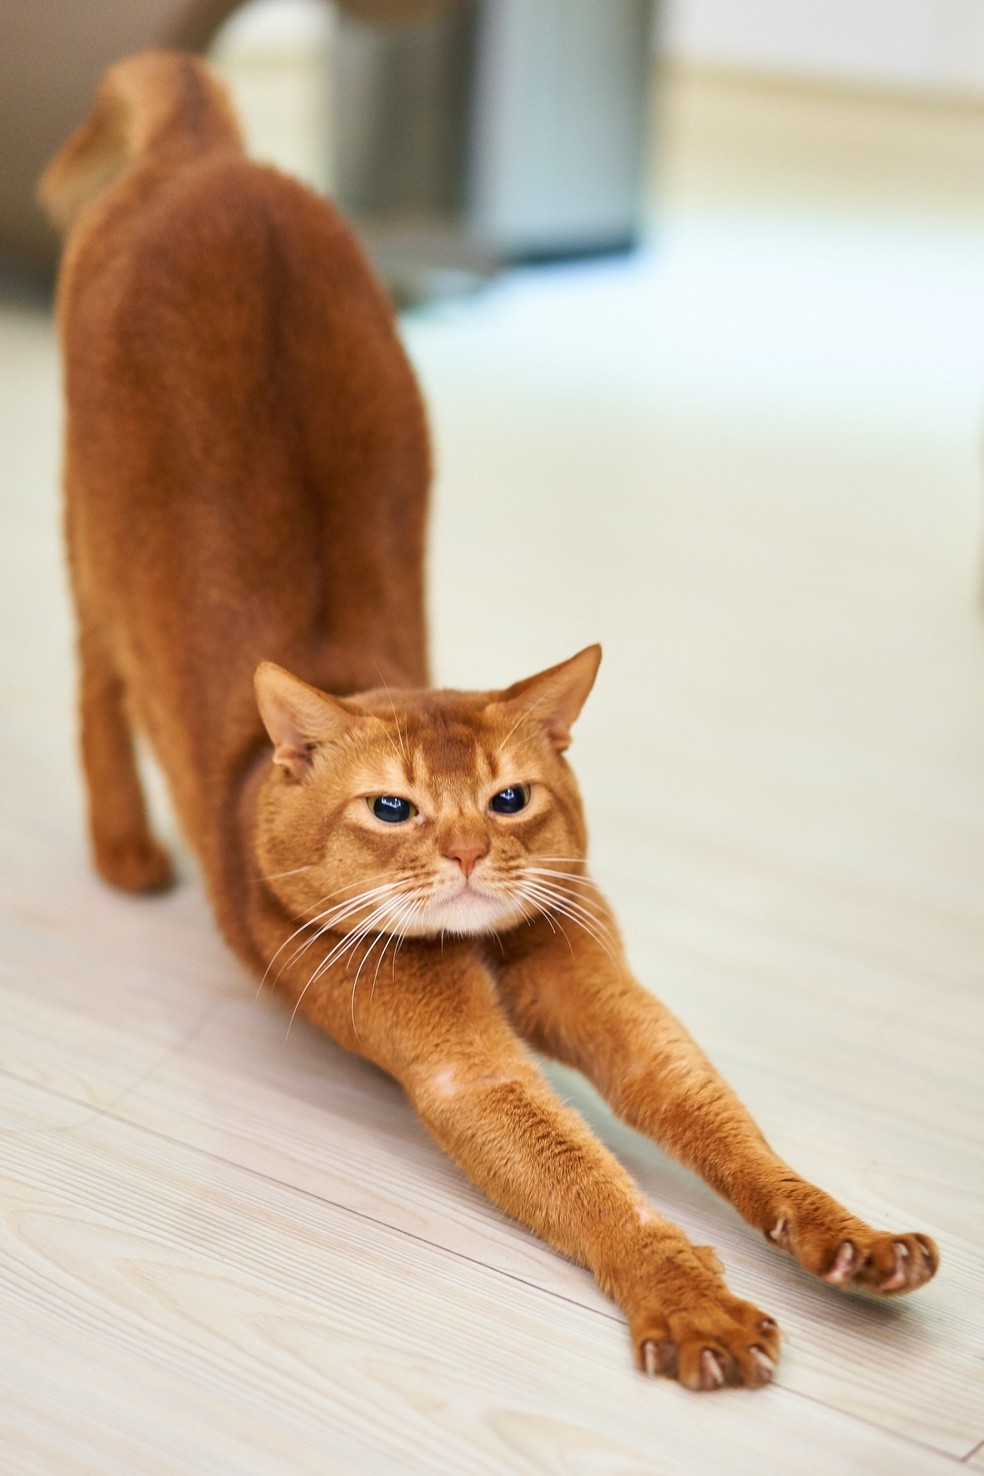 Por conta da flexibilidade natural, os gatos sofrem menos lesões nas articulações, mas a artrose pode se desenvolver conforme o animal envelhece — Foto: Unsplash/ Creative Commons